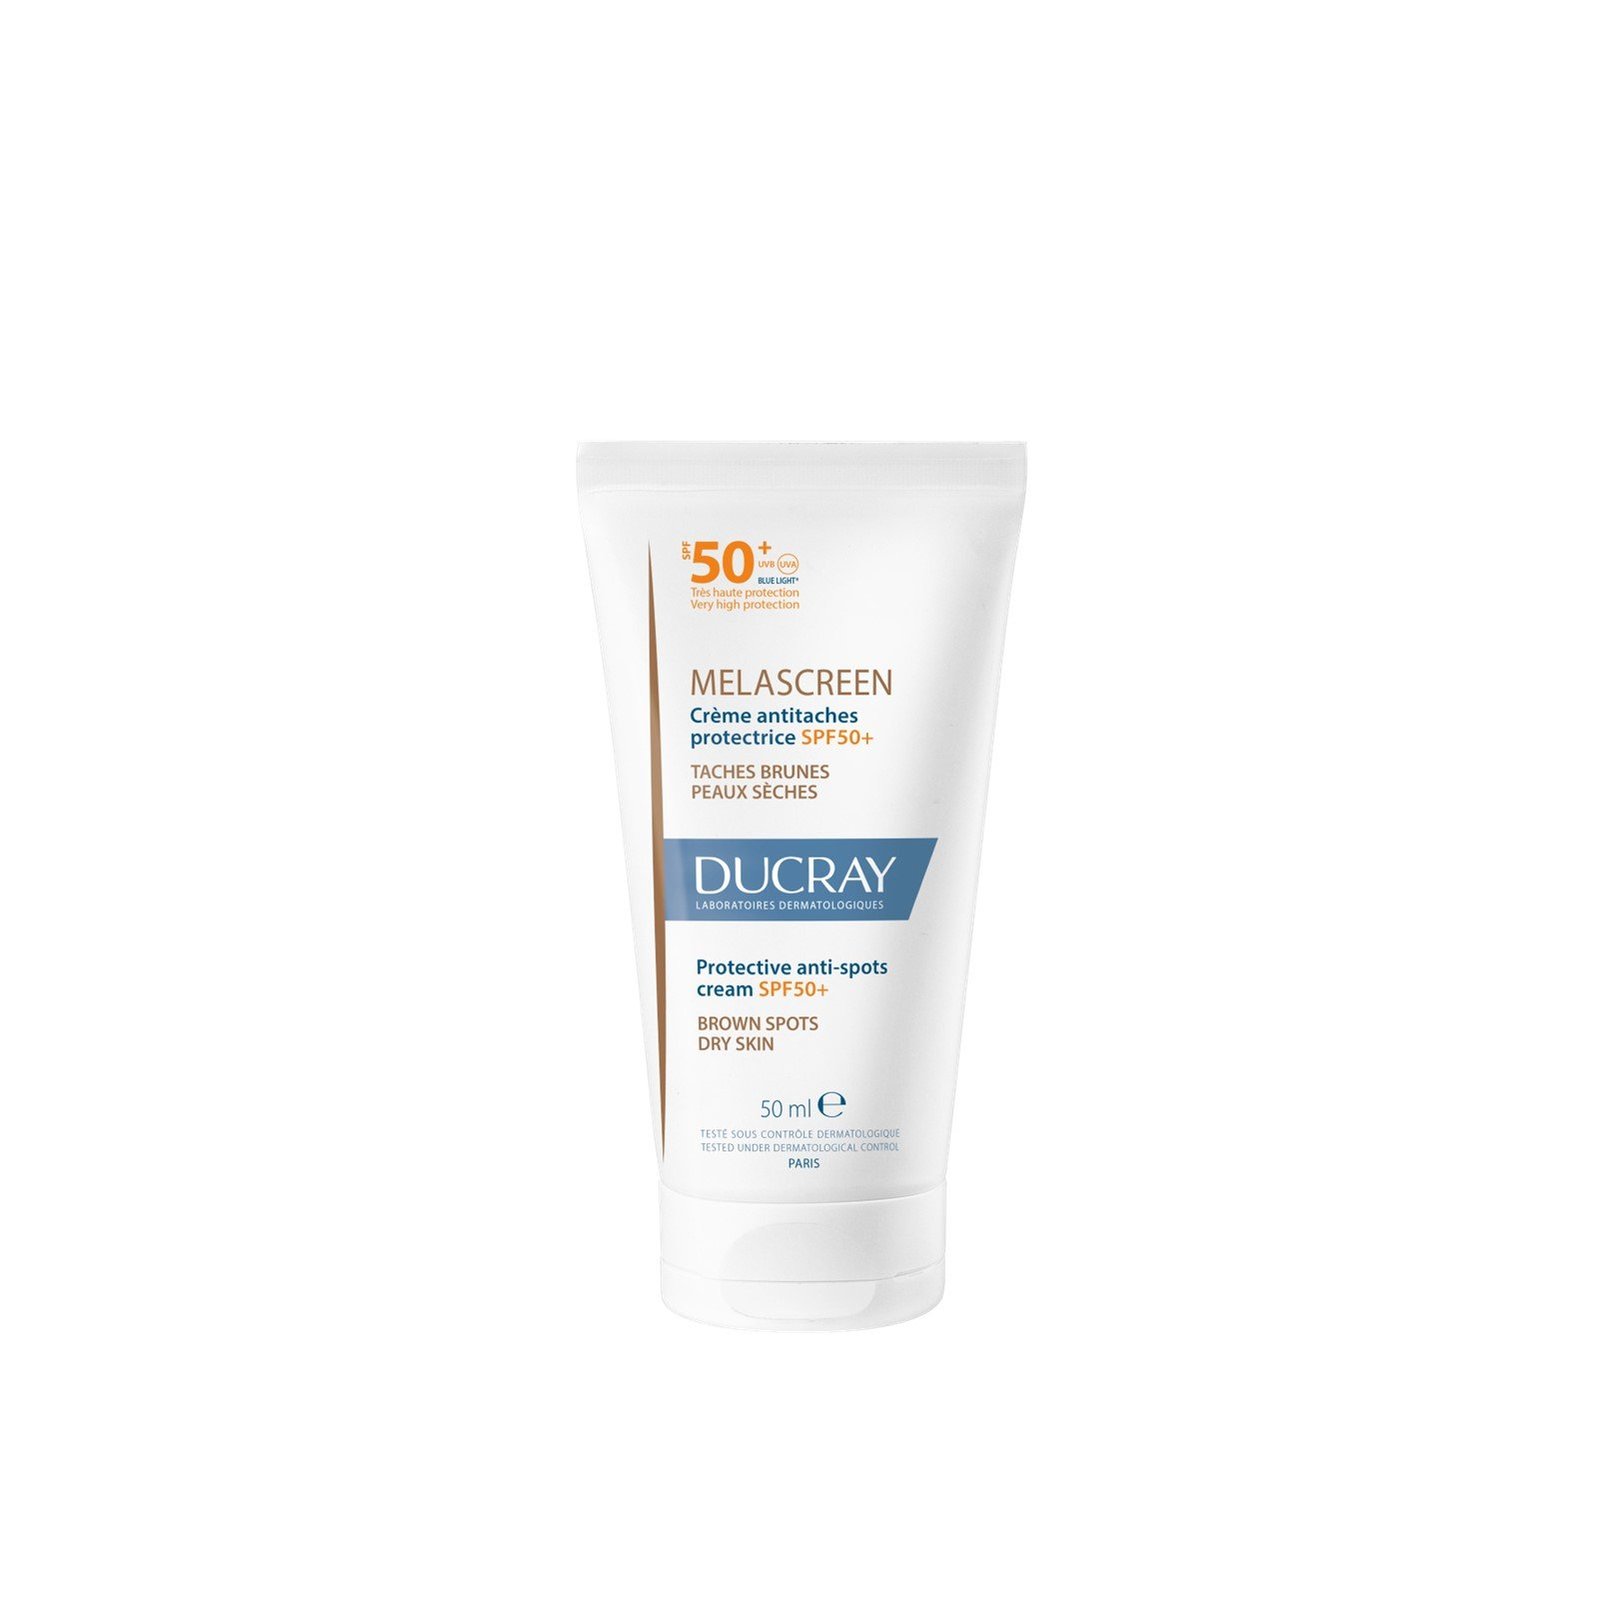 Ducray Melascreen Protective Anti-Spots Cream SPF50+ 50ml